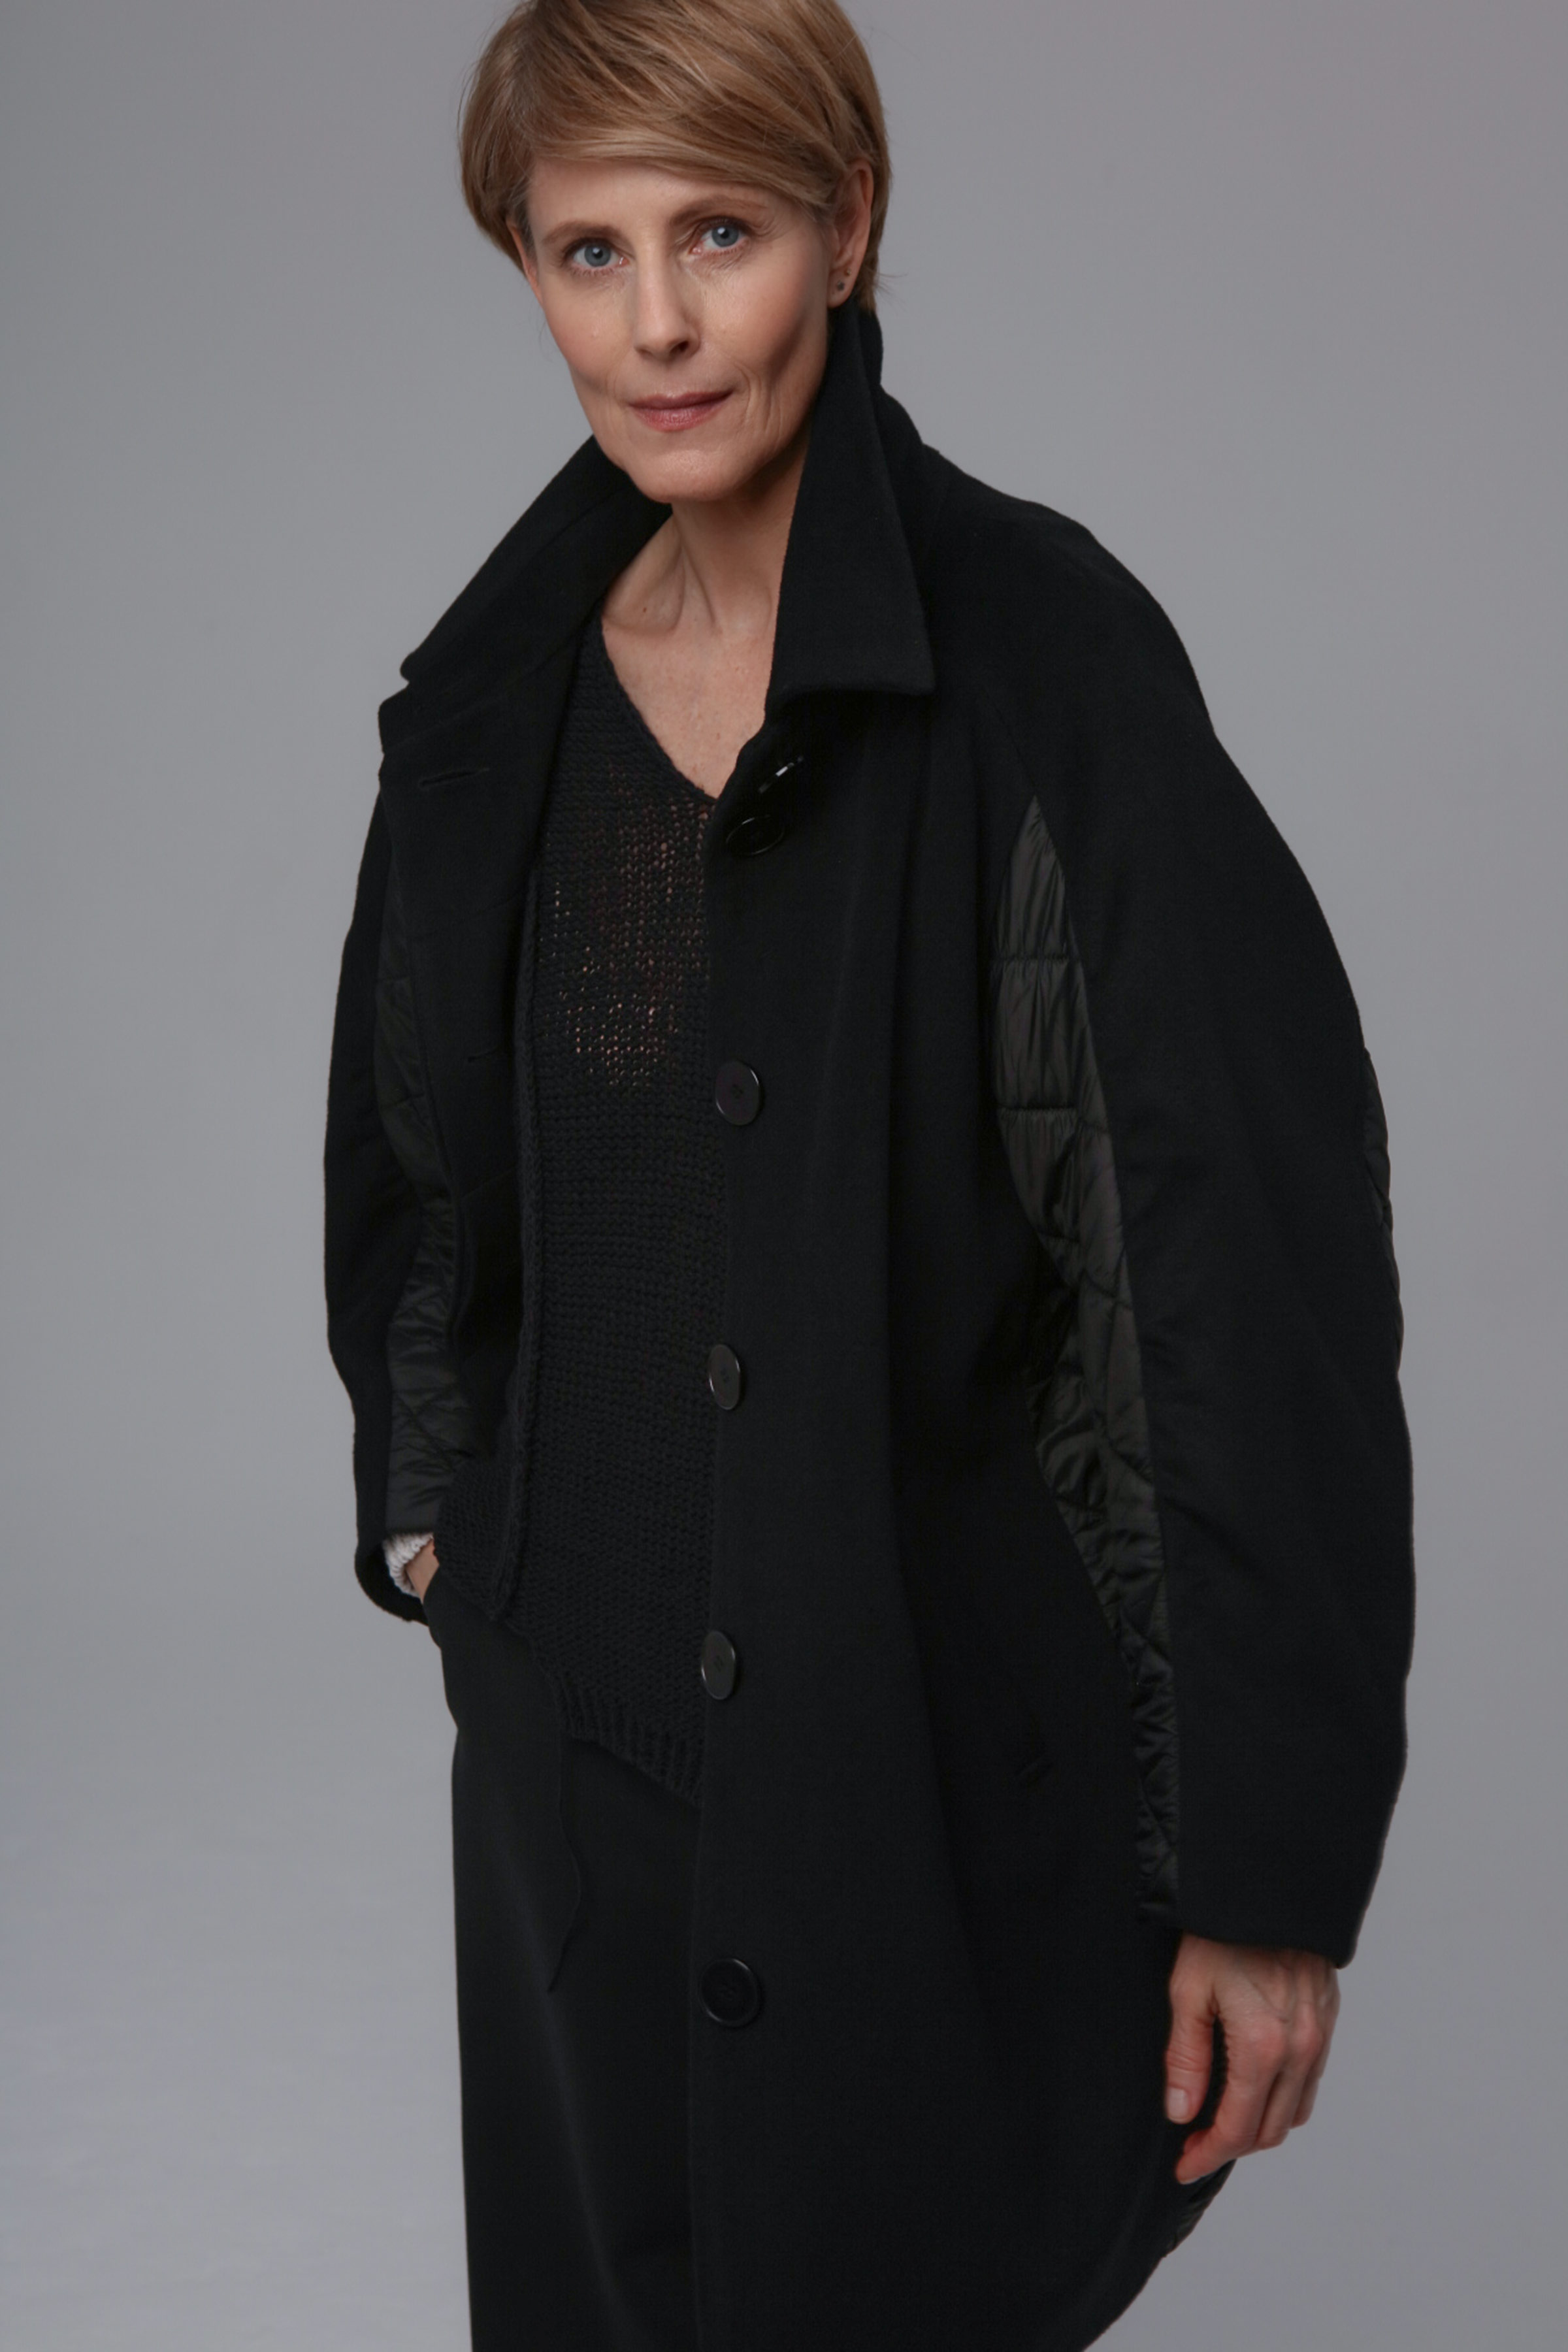 Пальто Комбинированное 00 Черный (noir) от Lesel (Лесель)! Заказывайте по ✆ 8 (800) 777 02 37